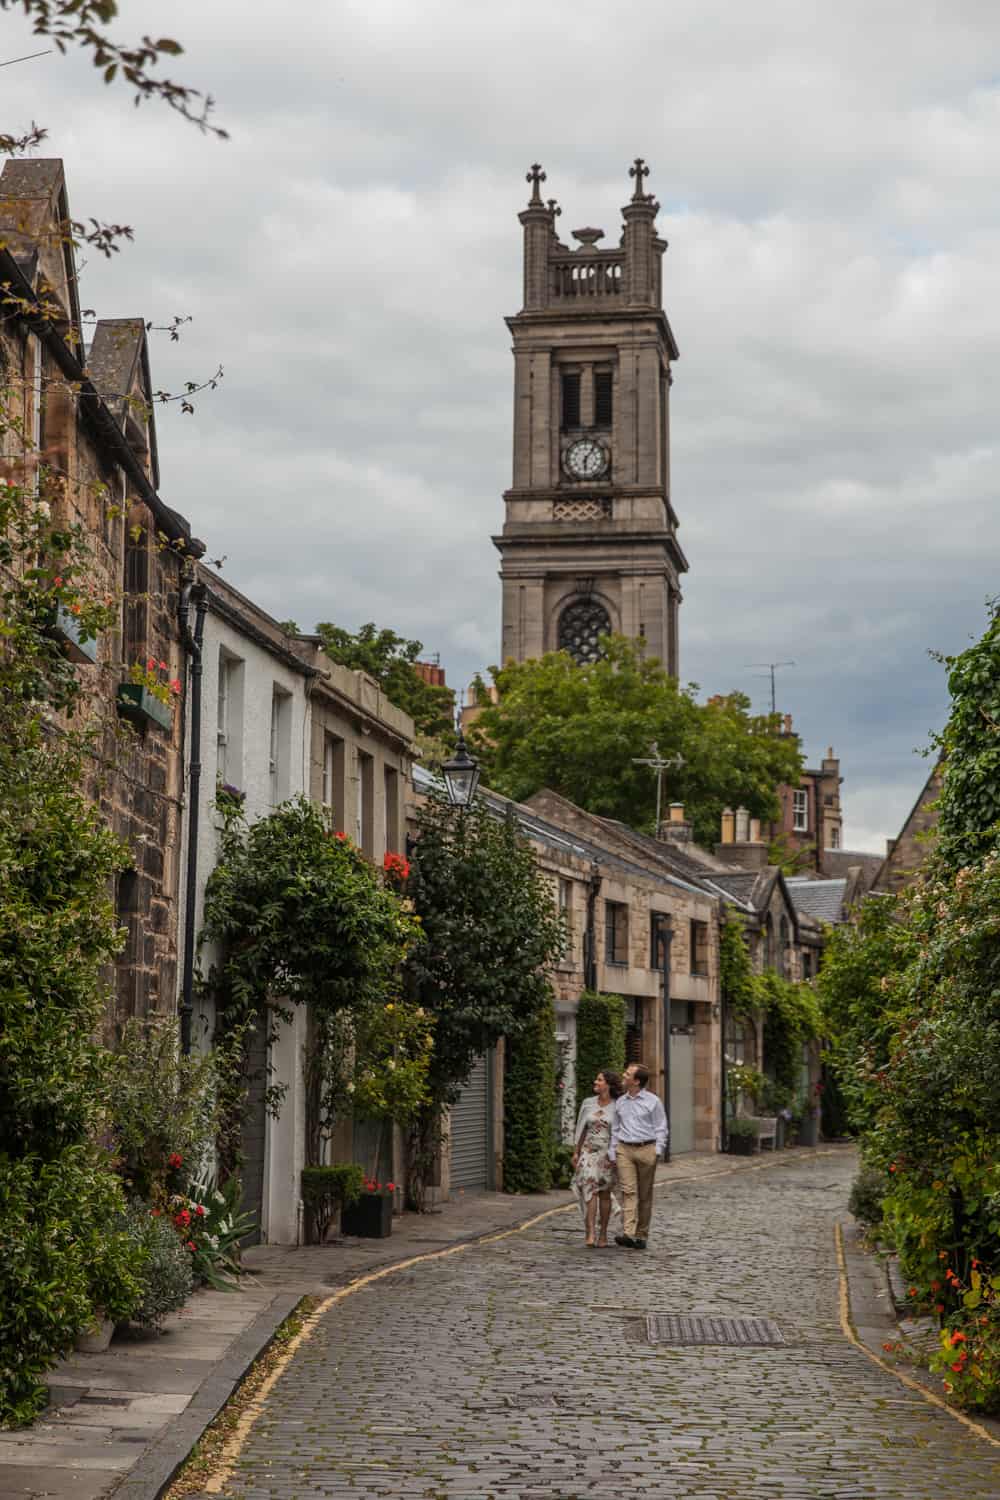 Top romantic places to propose in Edinburgh. 60